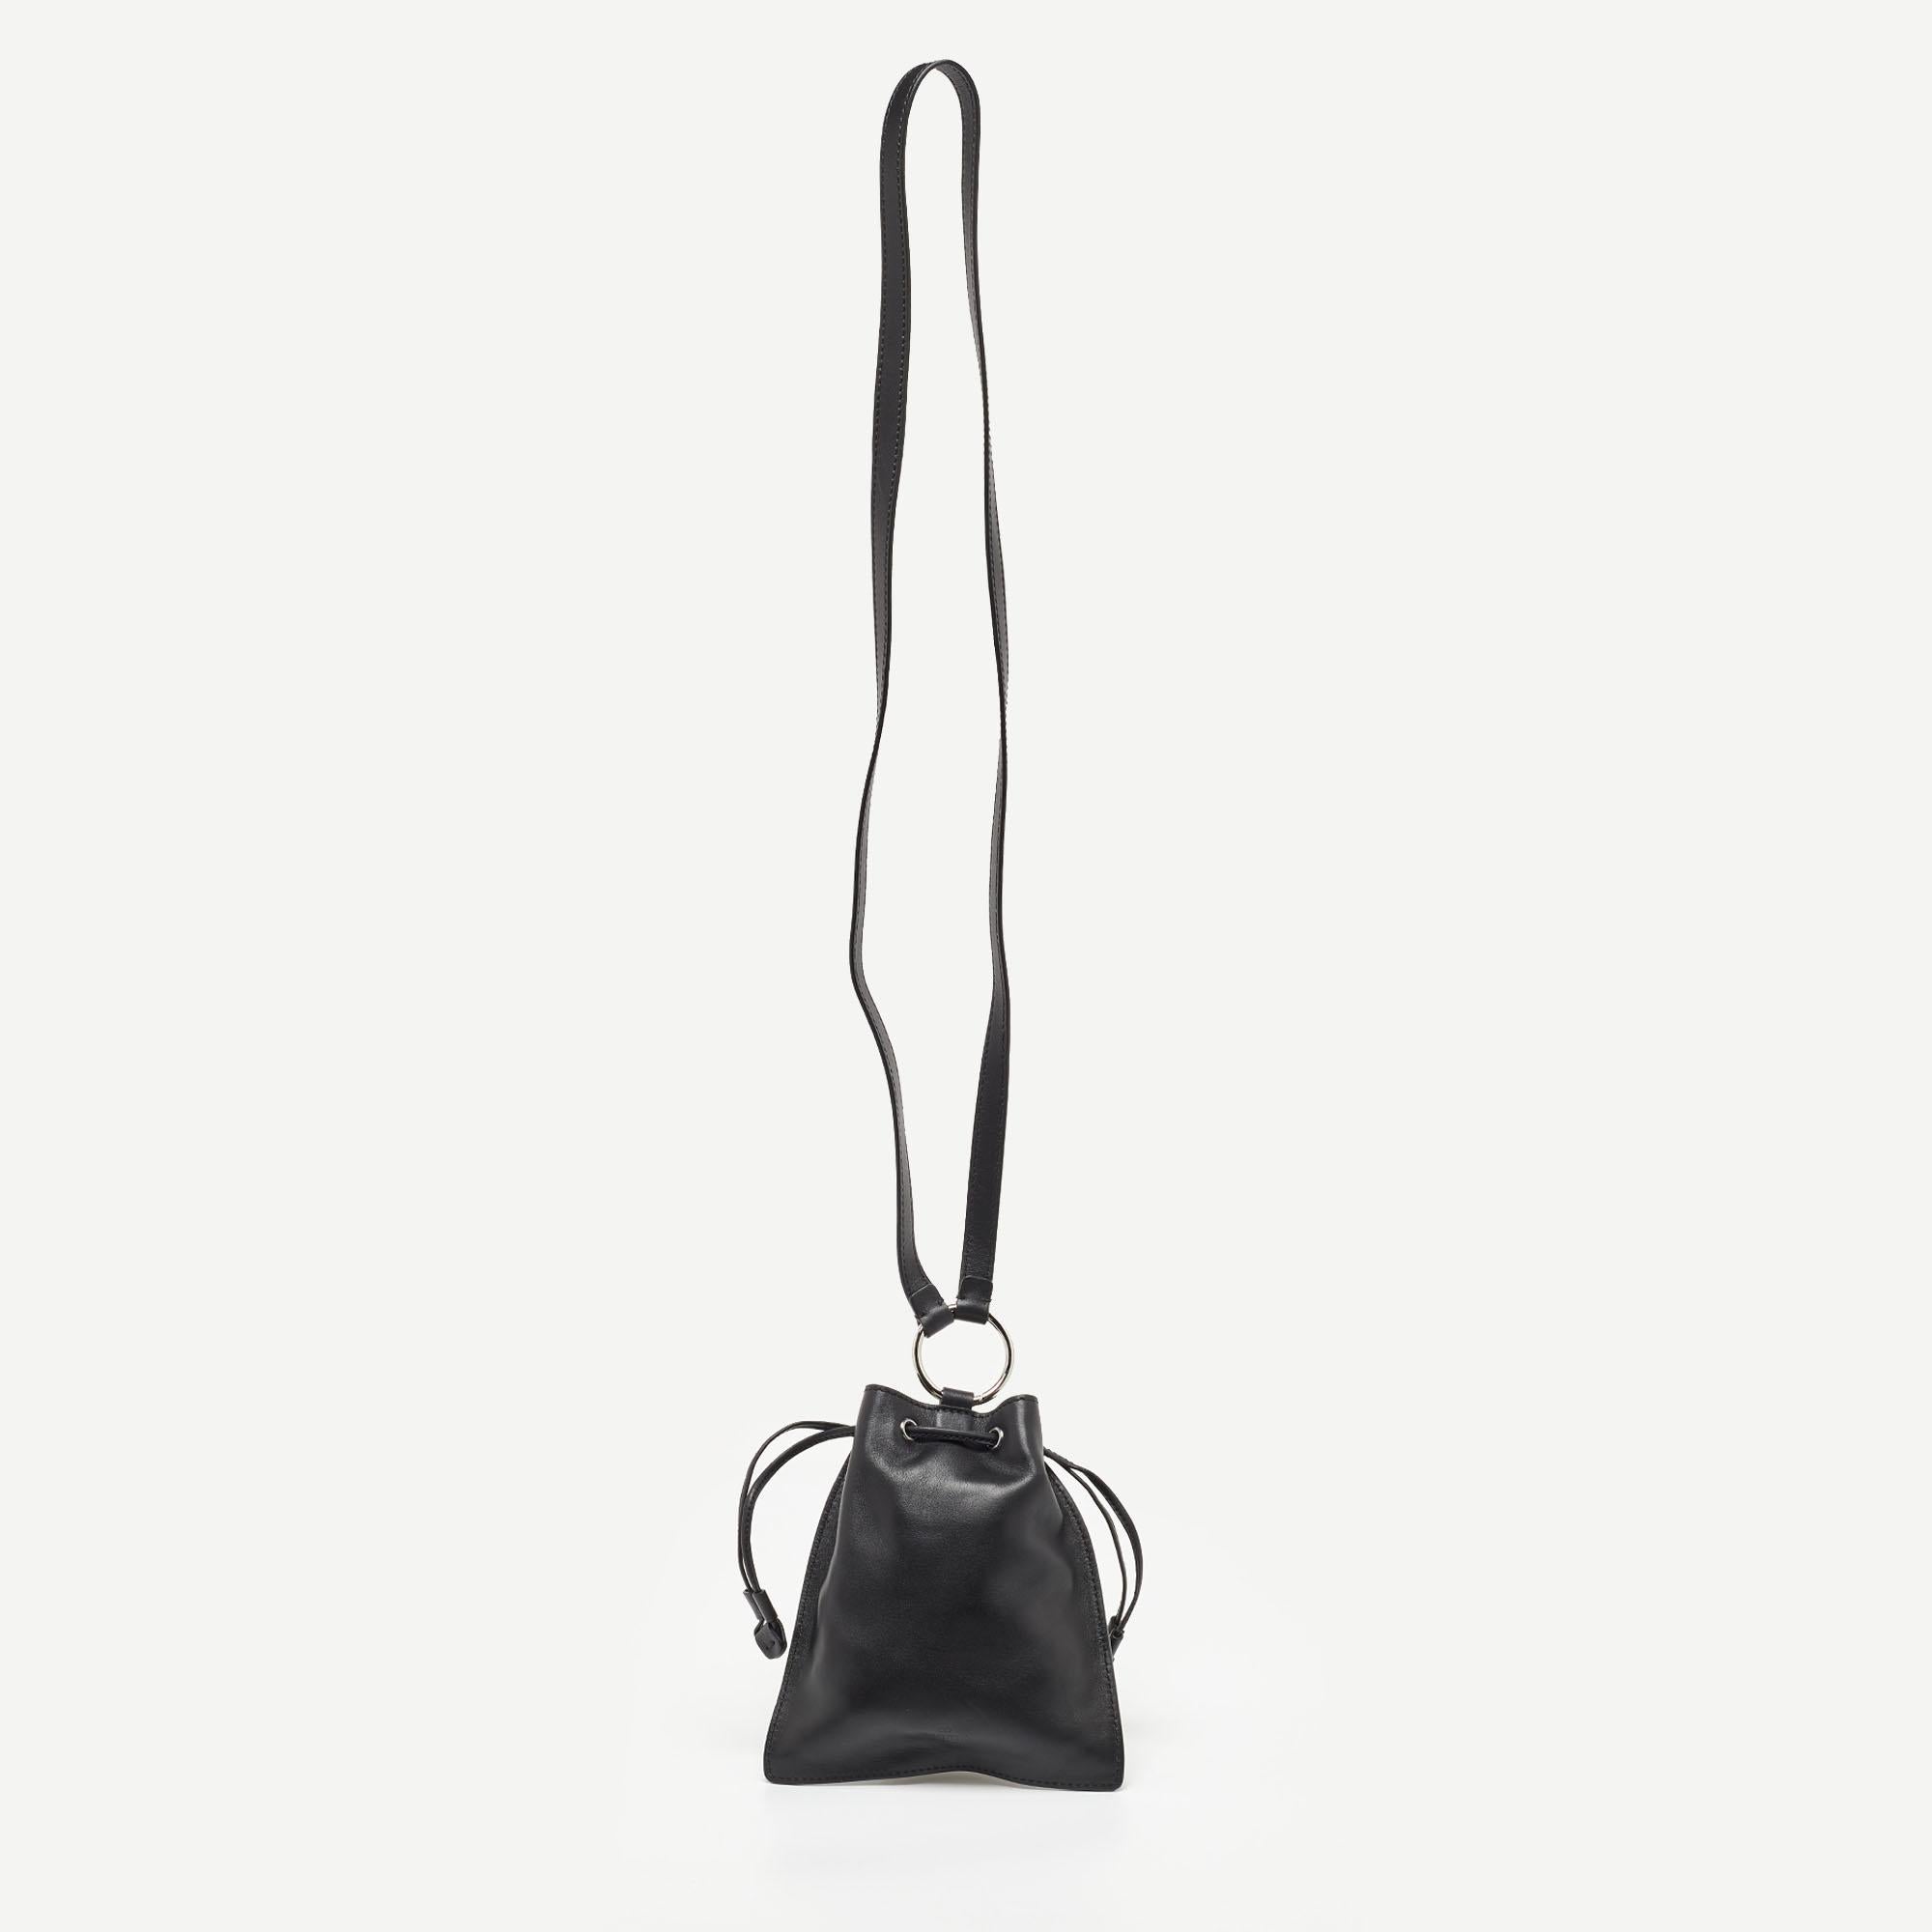 Diese Tasche von Valentino ist ein stilvolles Accessoire, das Mode und Funktion vereint und das Sie immer bei sich tragen werden. Sie ist aus hochwertigen Materialien gefertigt und bietet Platz für alles, was Sie brauchen.

